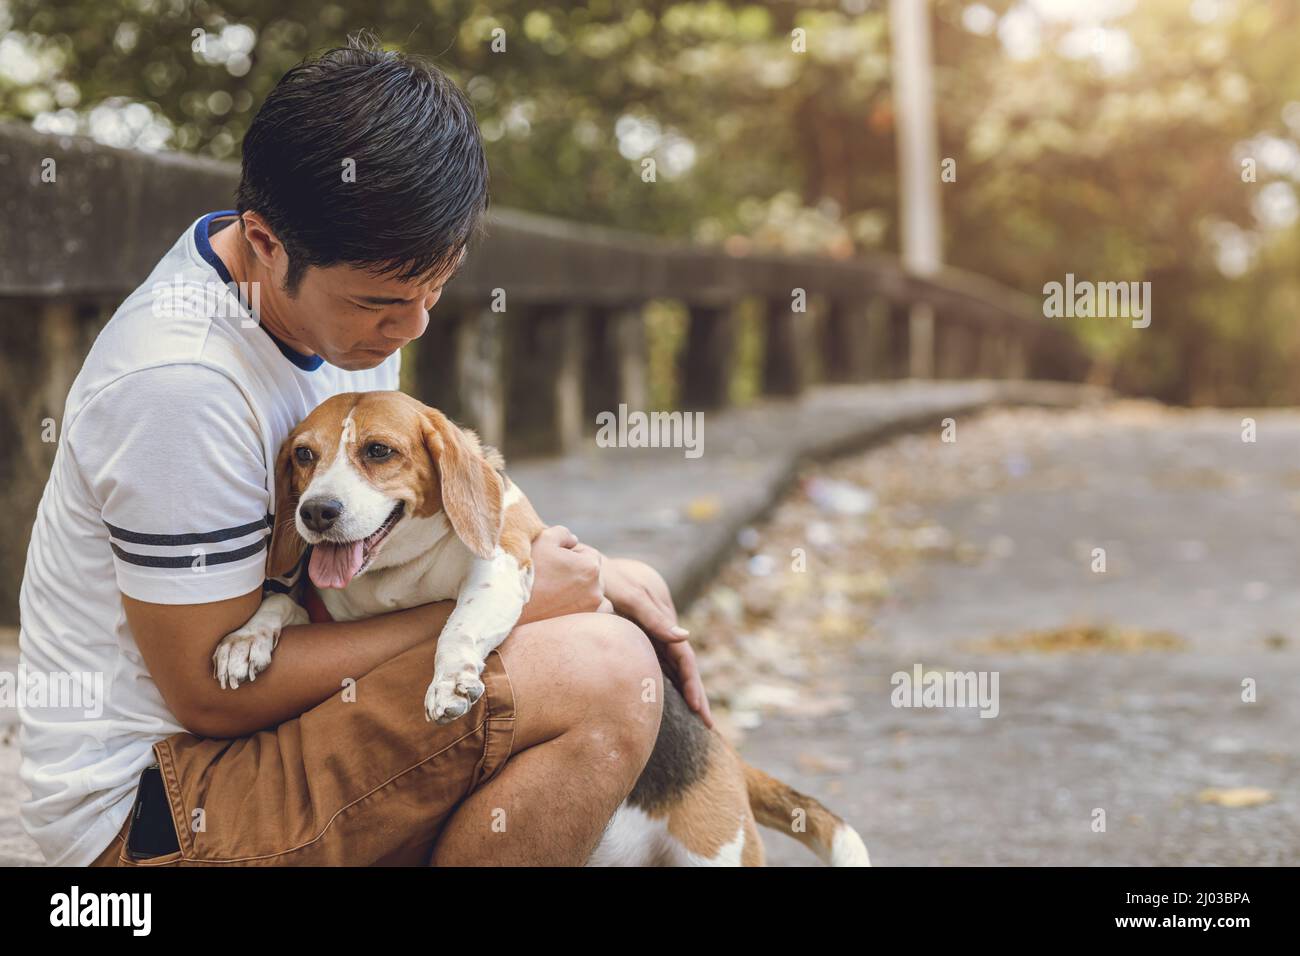 Die Menschen lieben und kümmern sich um seinen Hund. Der alte Beagle-Hund bleibt beim Menschen. Stockfoto